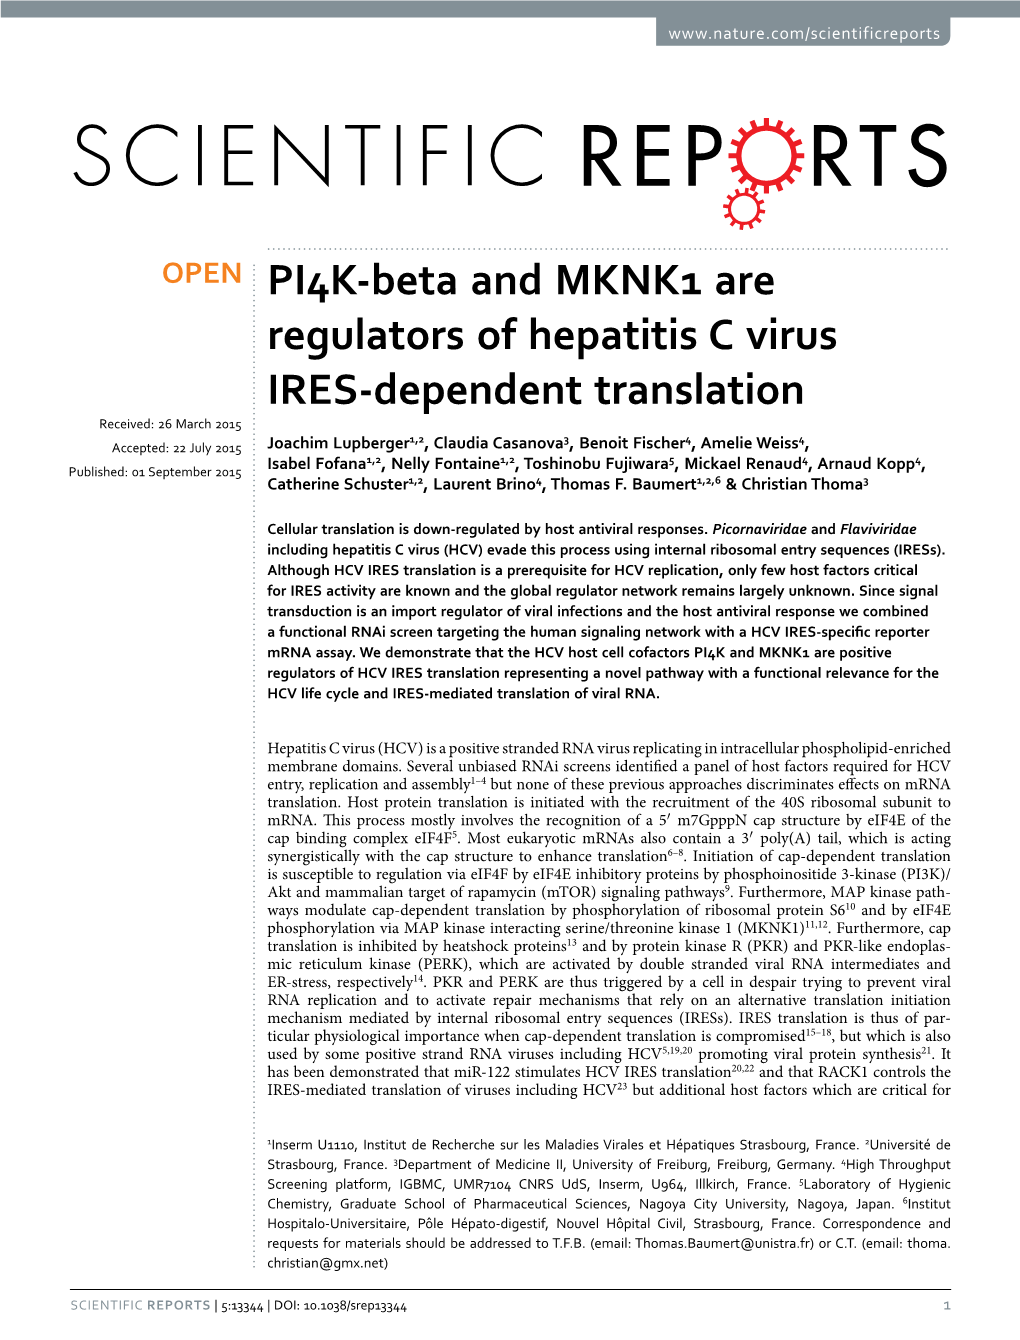 PI4K-Beta and MKNK1 Are Regulators of Hepatitis C Virus